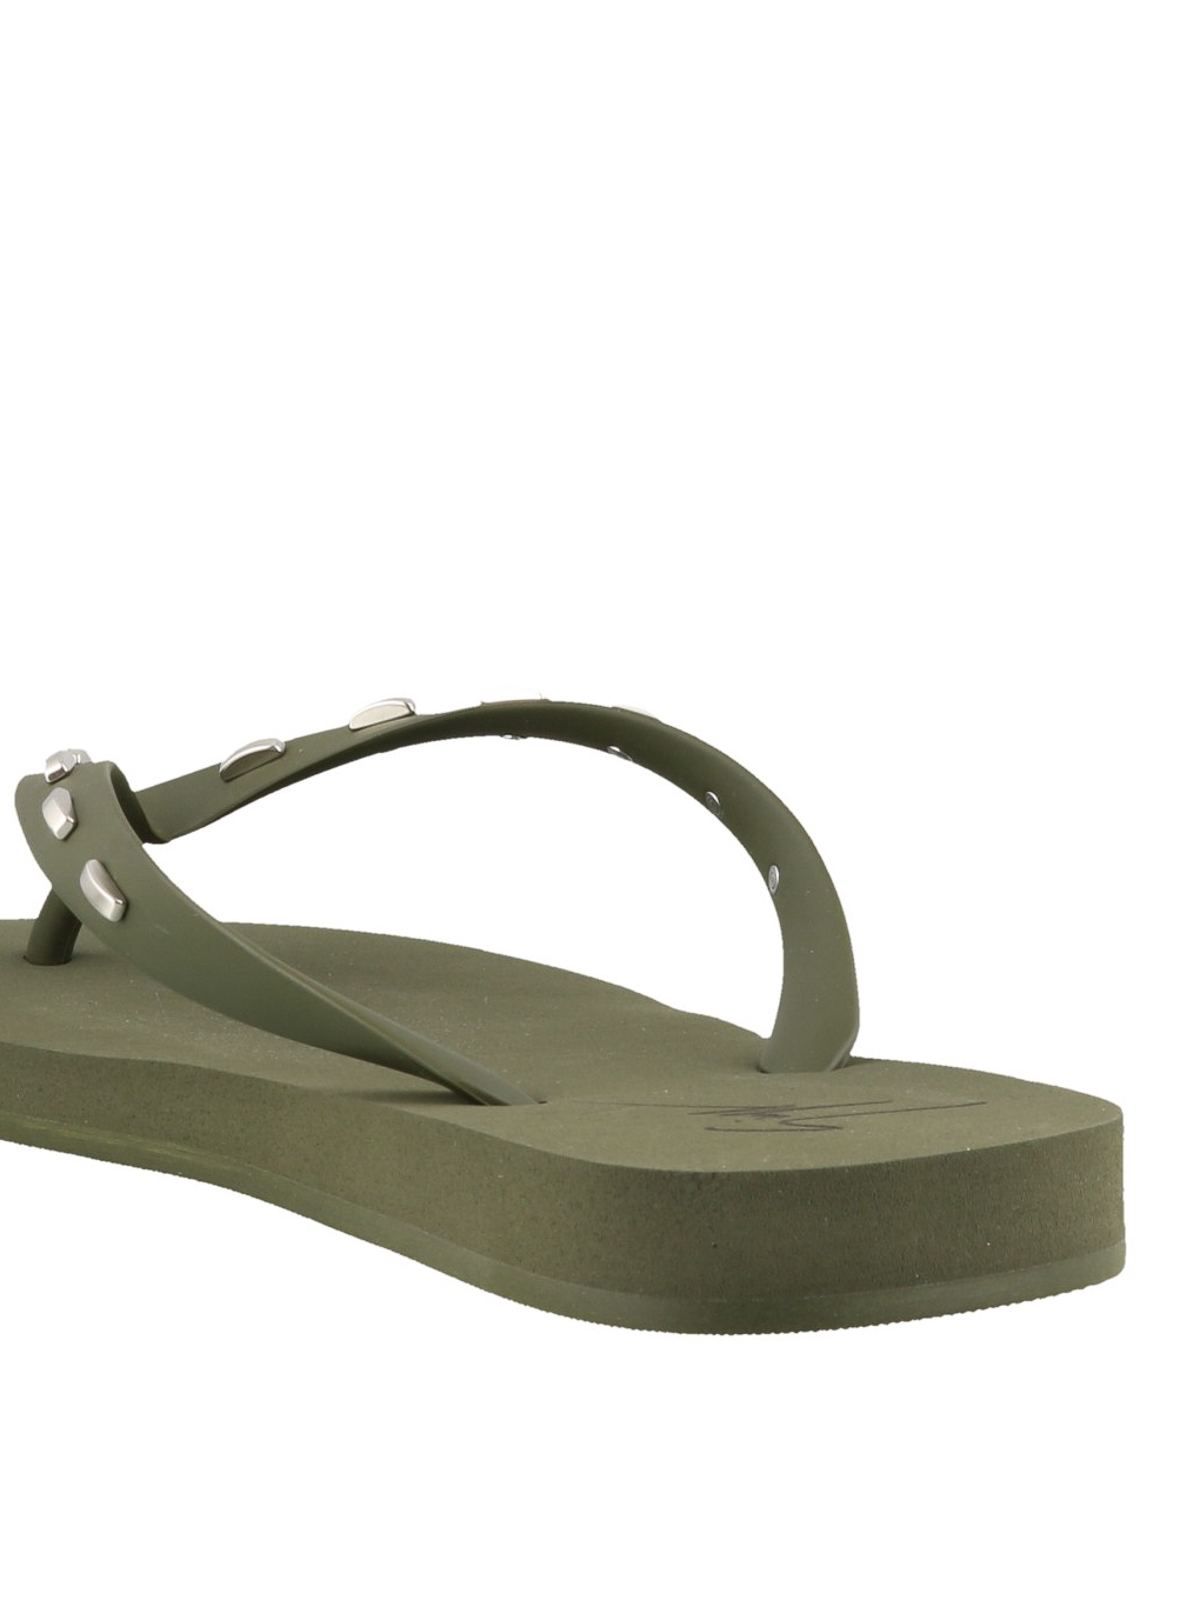 khaki green flip flops